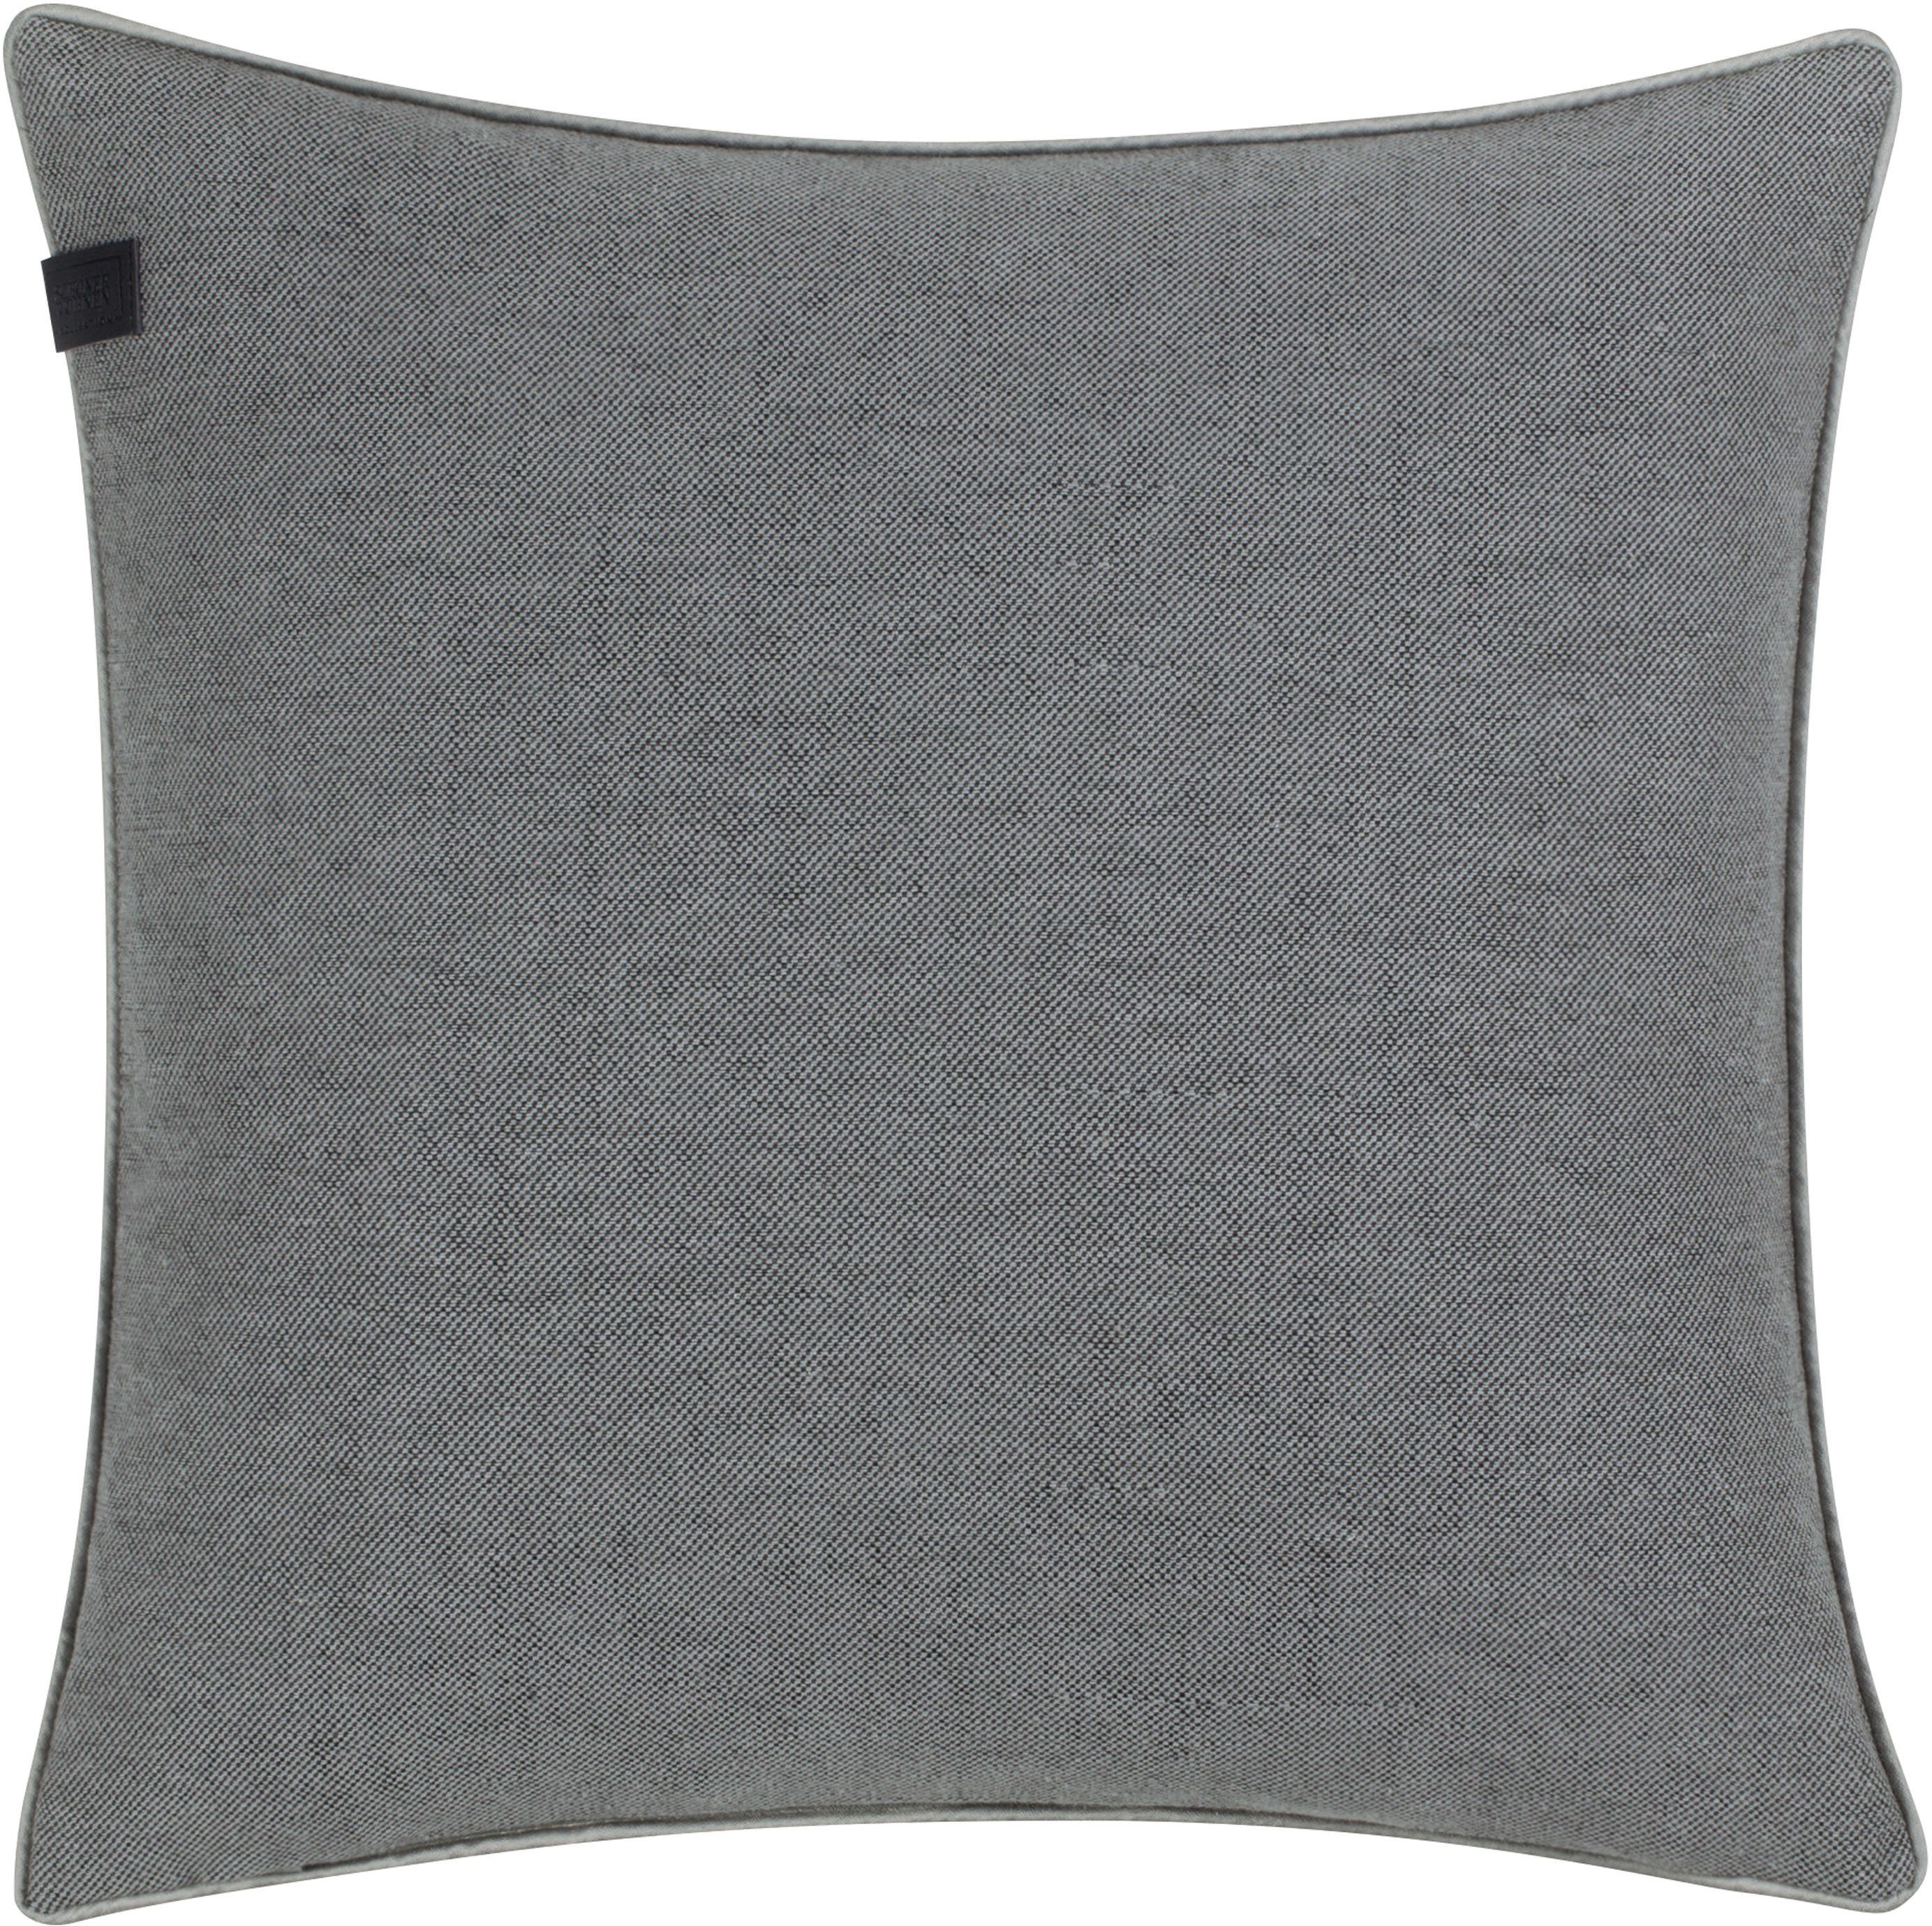 SCHÖNER WOHNEN-Kollektion Dekokissen Soft, 45x45 cm grey